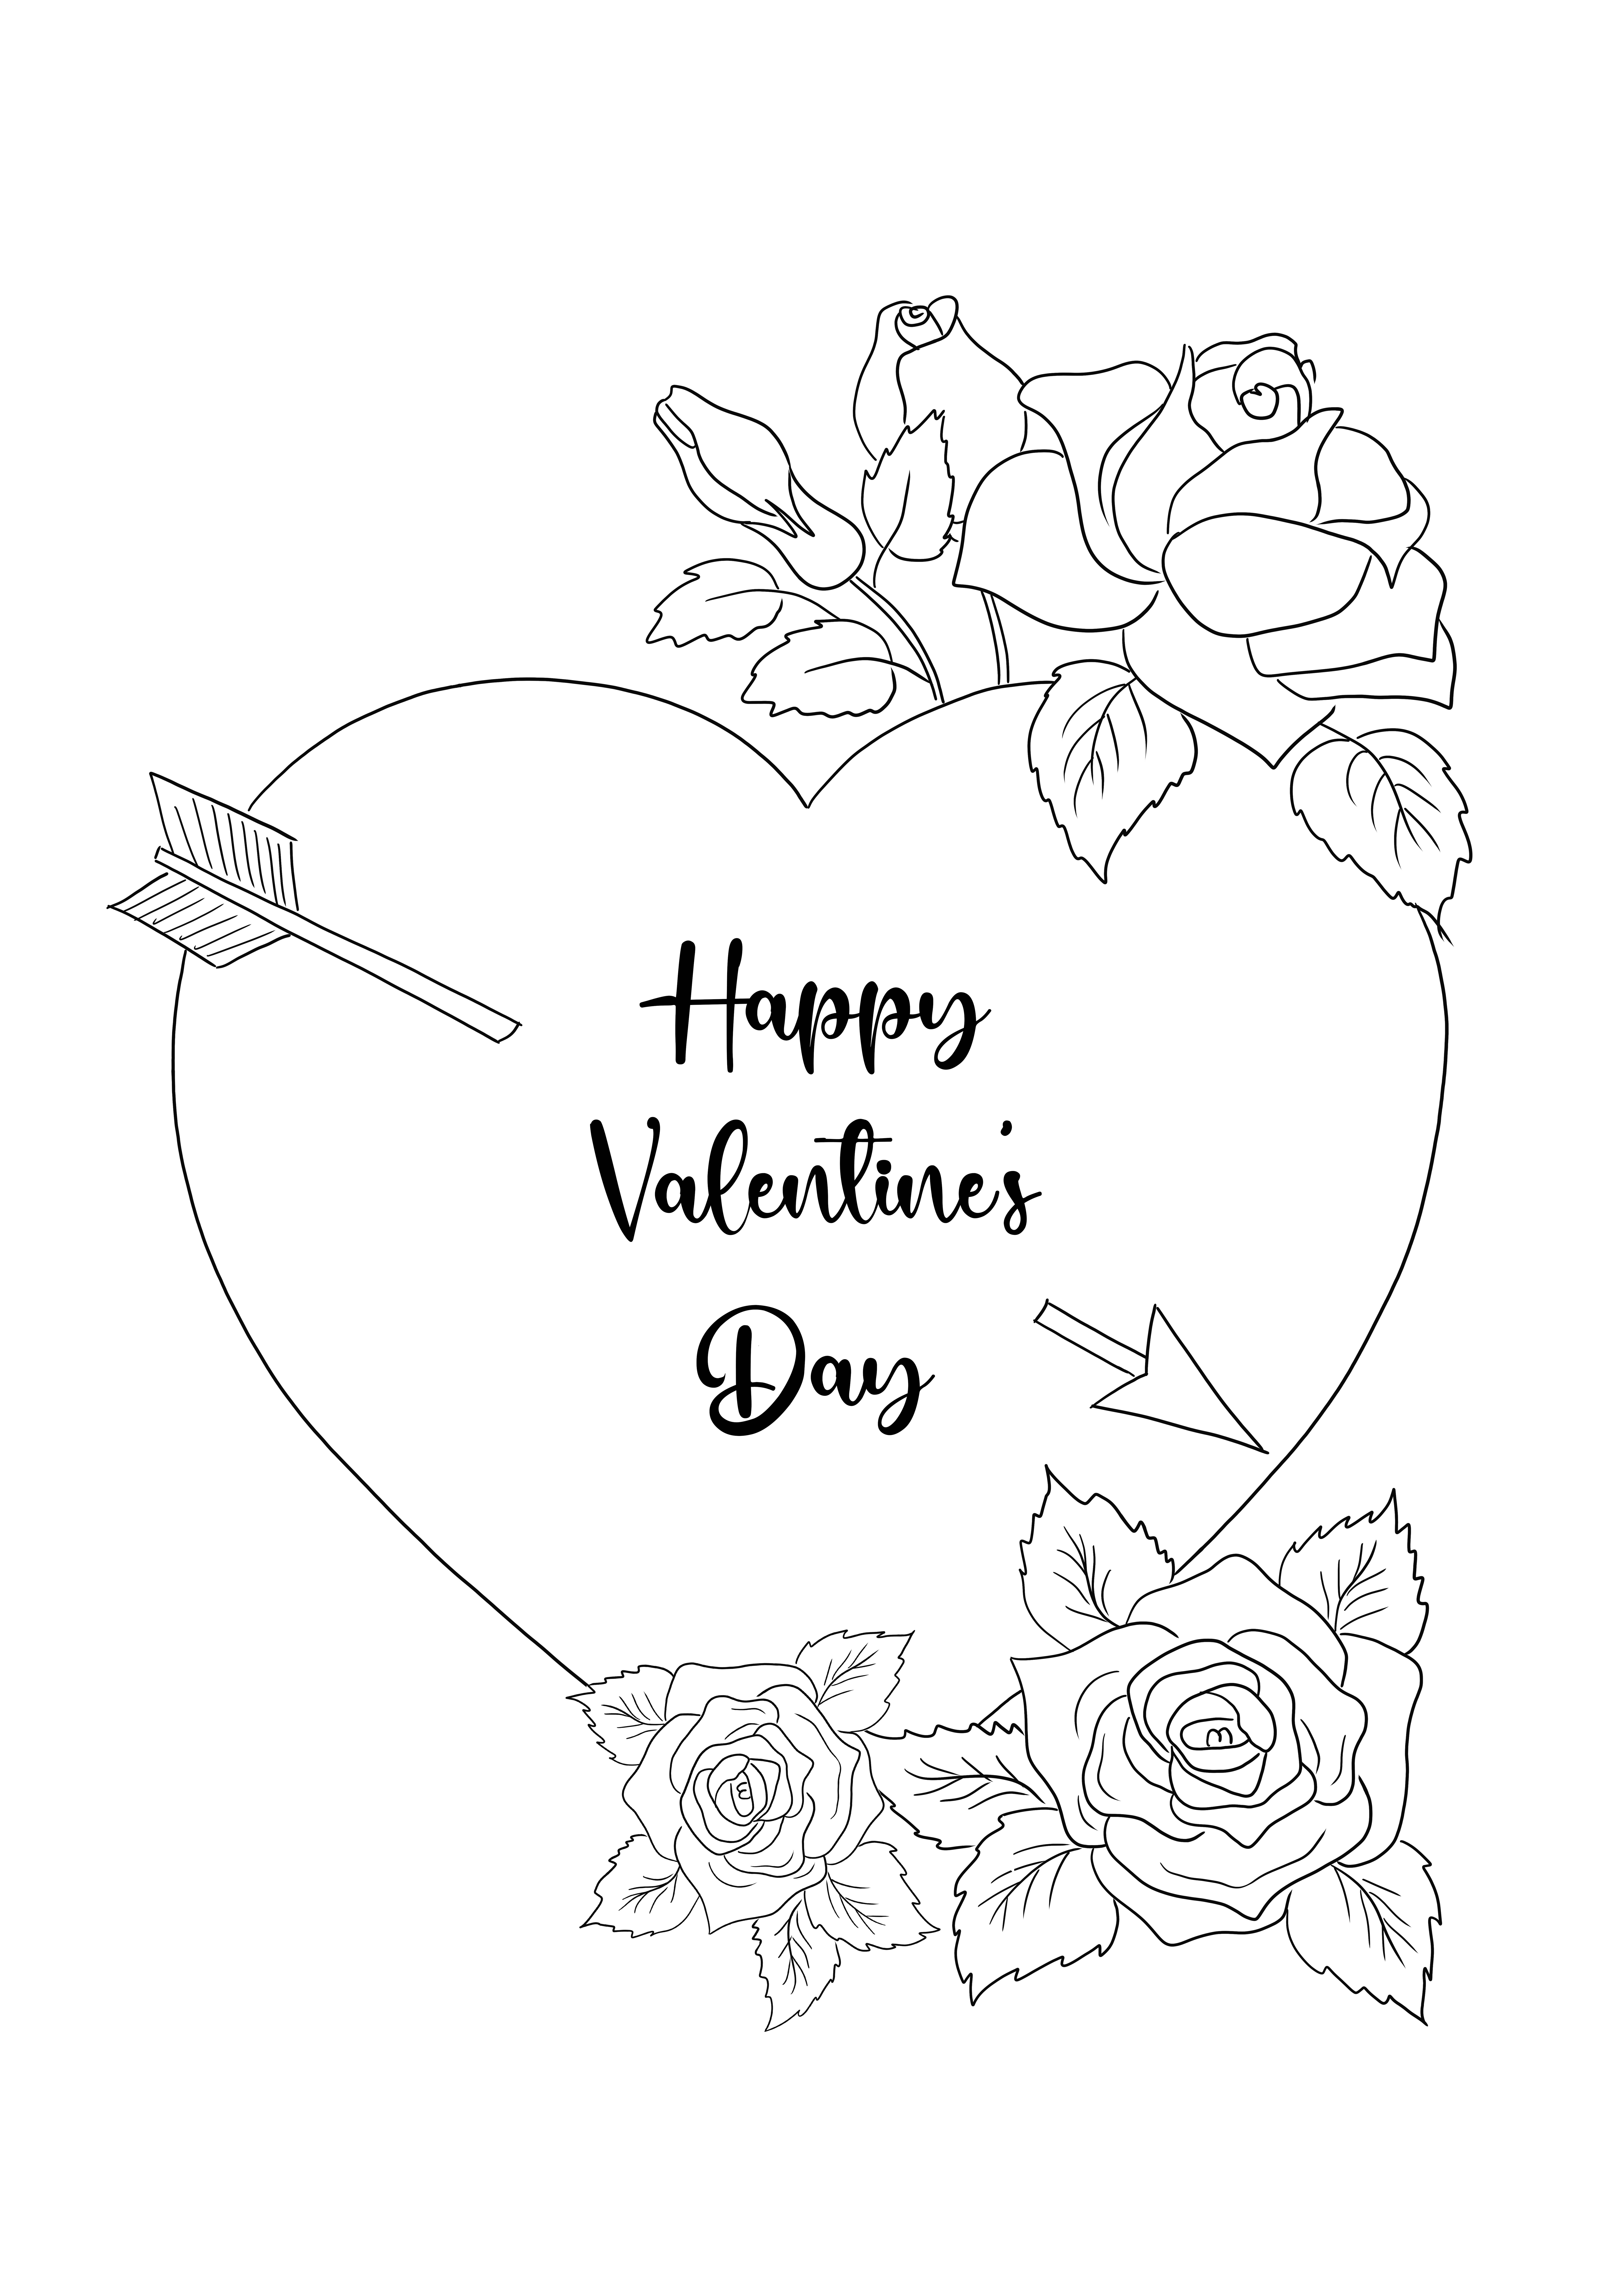 Halaman mewarnai Kartu Hari Valentine untuk semua pecinta, kecil atau besar untuk diunduh gratis